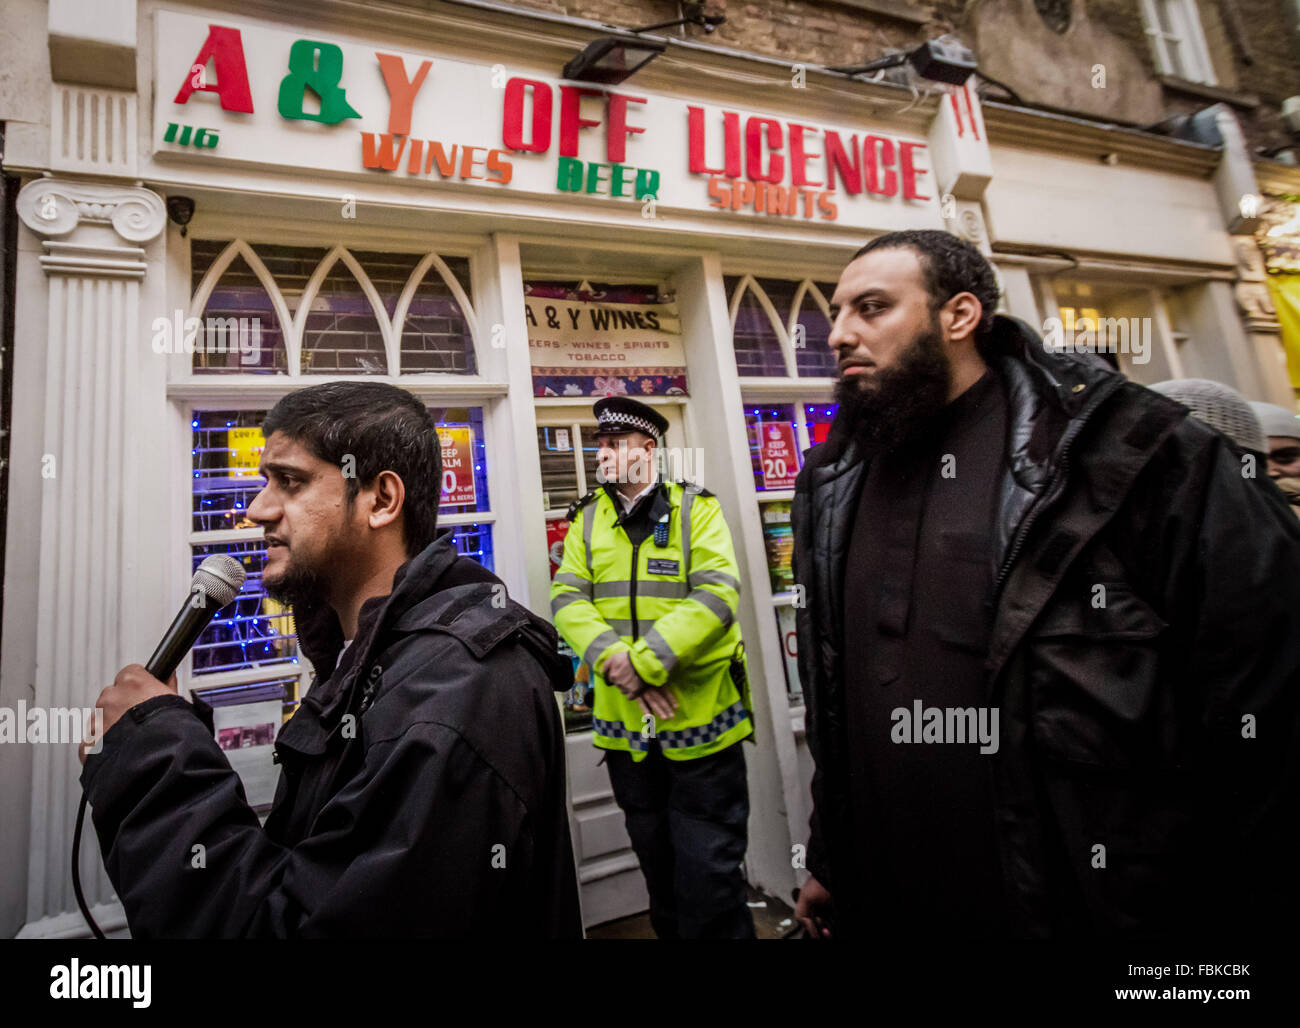 Datei-IMAGES: London, UK.13th Dez 2013. Datei-Images von 13.12.2013: Mohammed Reza Haque (rechts), 35, bekannt als die "Riese" im Verdacht, den zweiten britischen islamischen Extremisten werden gedacht, um unter einem Team der Henker, die tot fünf "Spione" in Syrien Anfang dieses Jahres erschossen. Sehen Sie hier, im Jahr 2013 zu einer Anti-Alkohol islamistischen Protest in Brick Lane mit anderen islamistischen Abu Rumaysah (links) Credit: Guy Corbishley/Alamy Live News Stockfoto